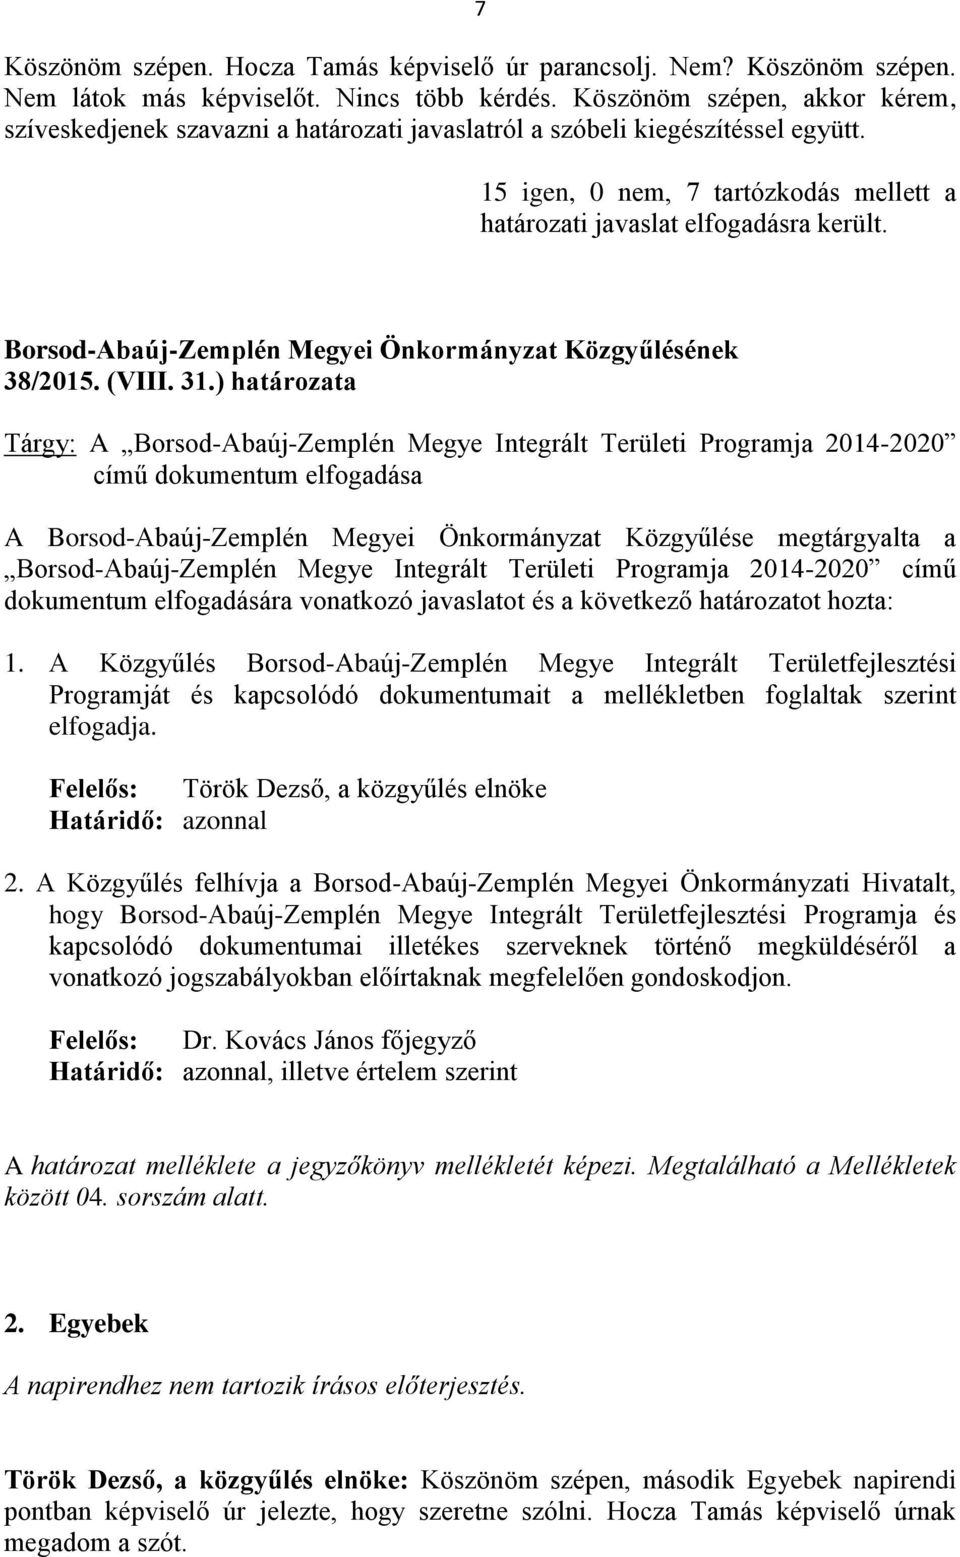 Borsod-Abaúj-Zemplén Megyei Önkormányzat Közgyűlésének 38/2015. (VIII. 31.